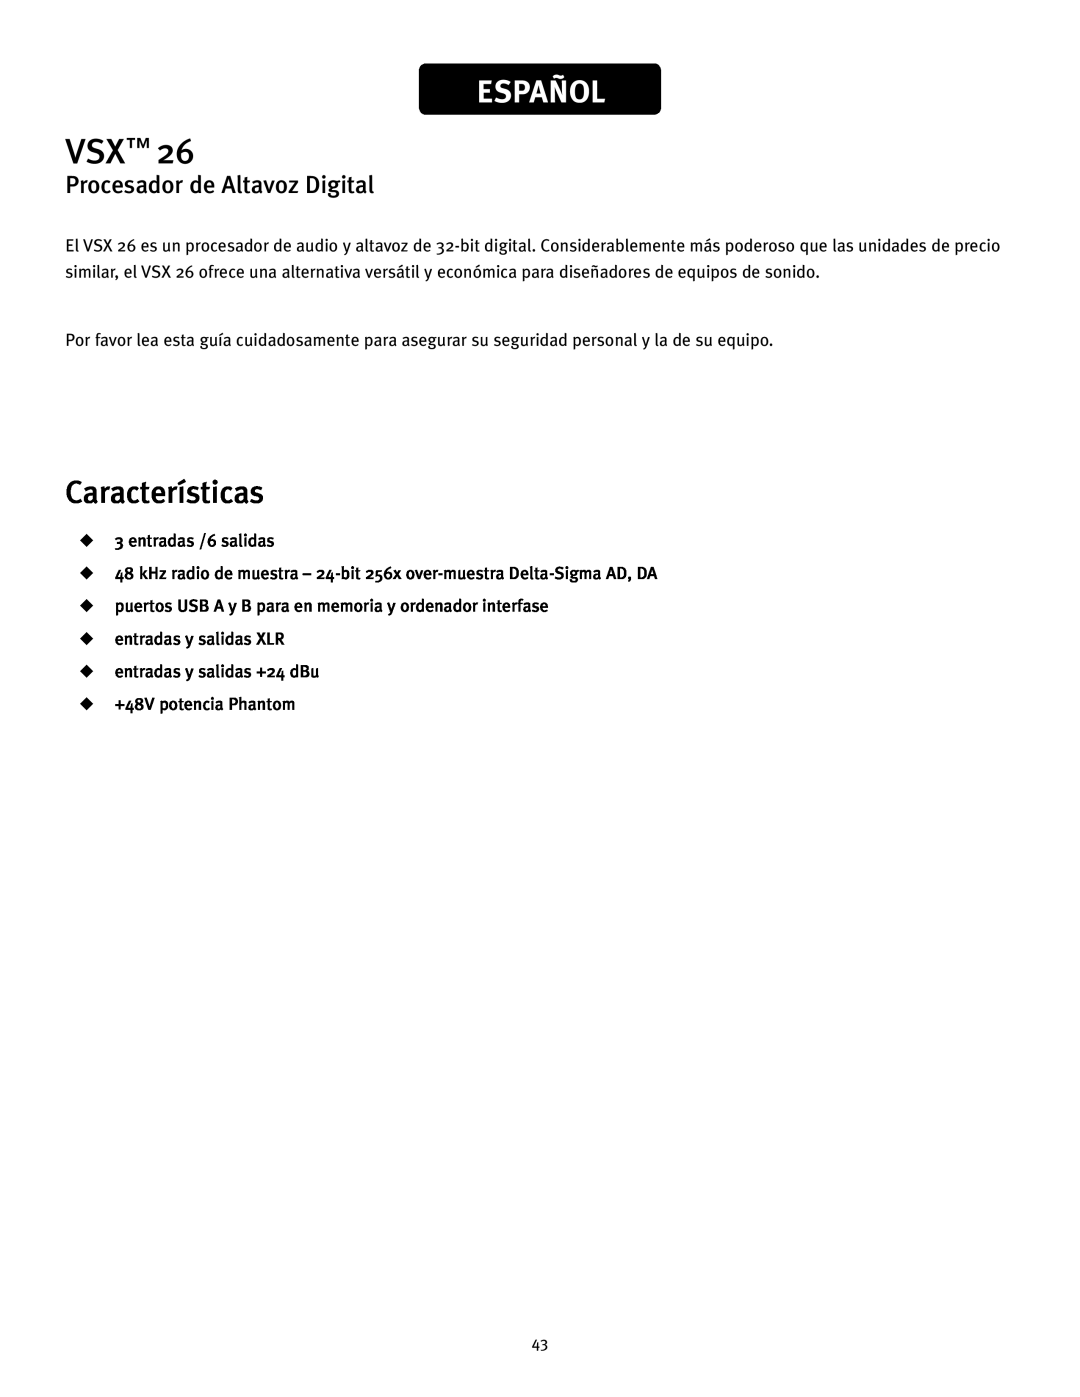 Peavey 26 manual Español, Características, Procesador de Altavoz Digital 